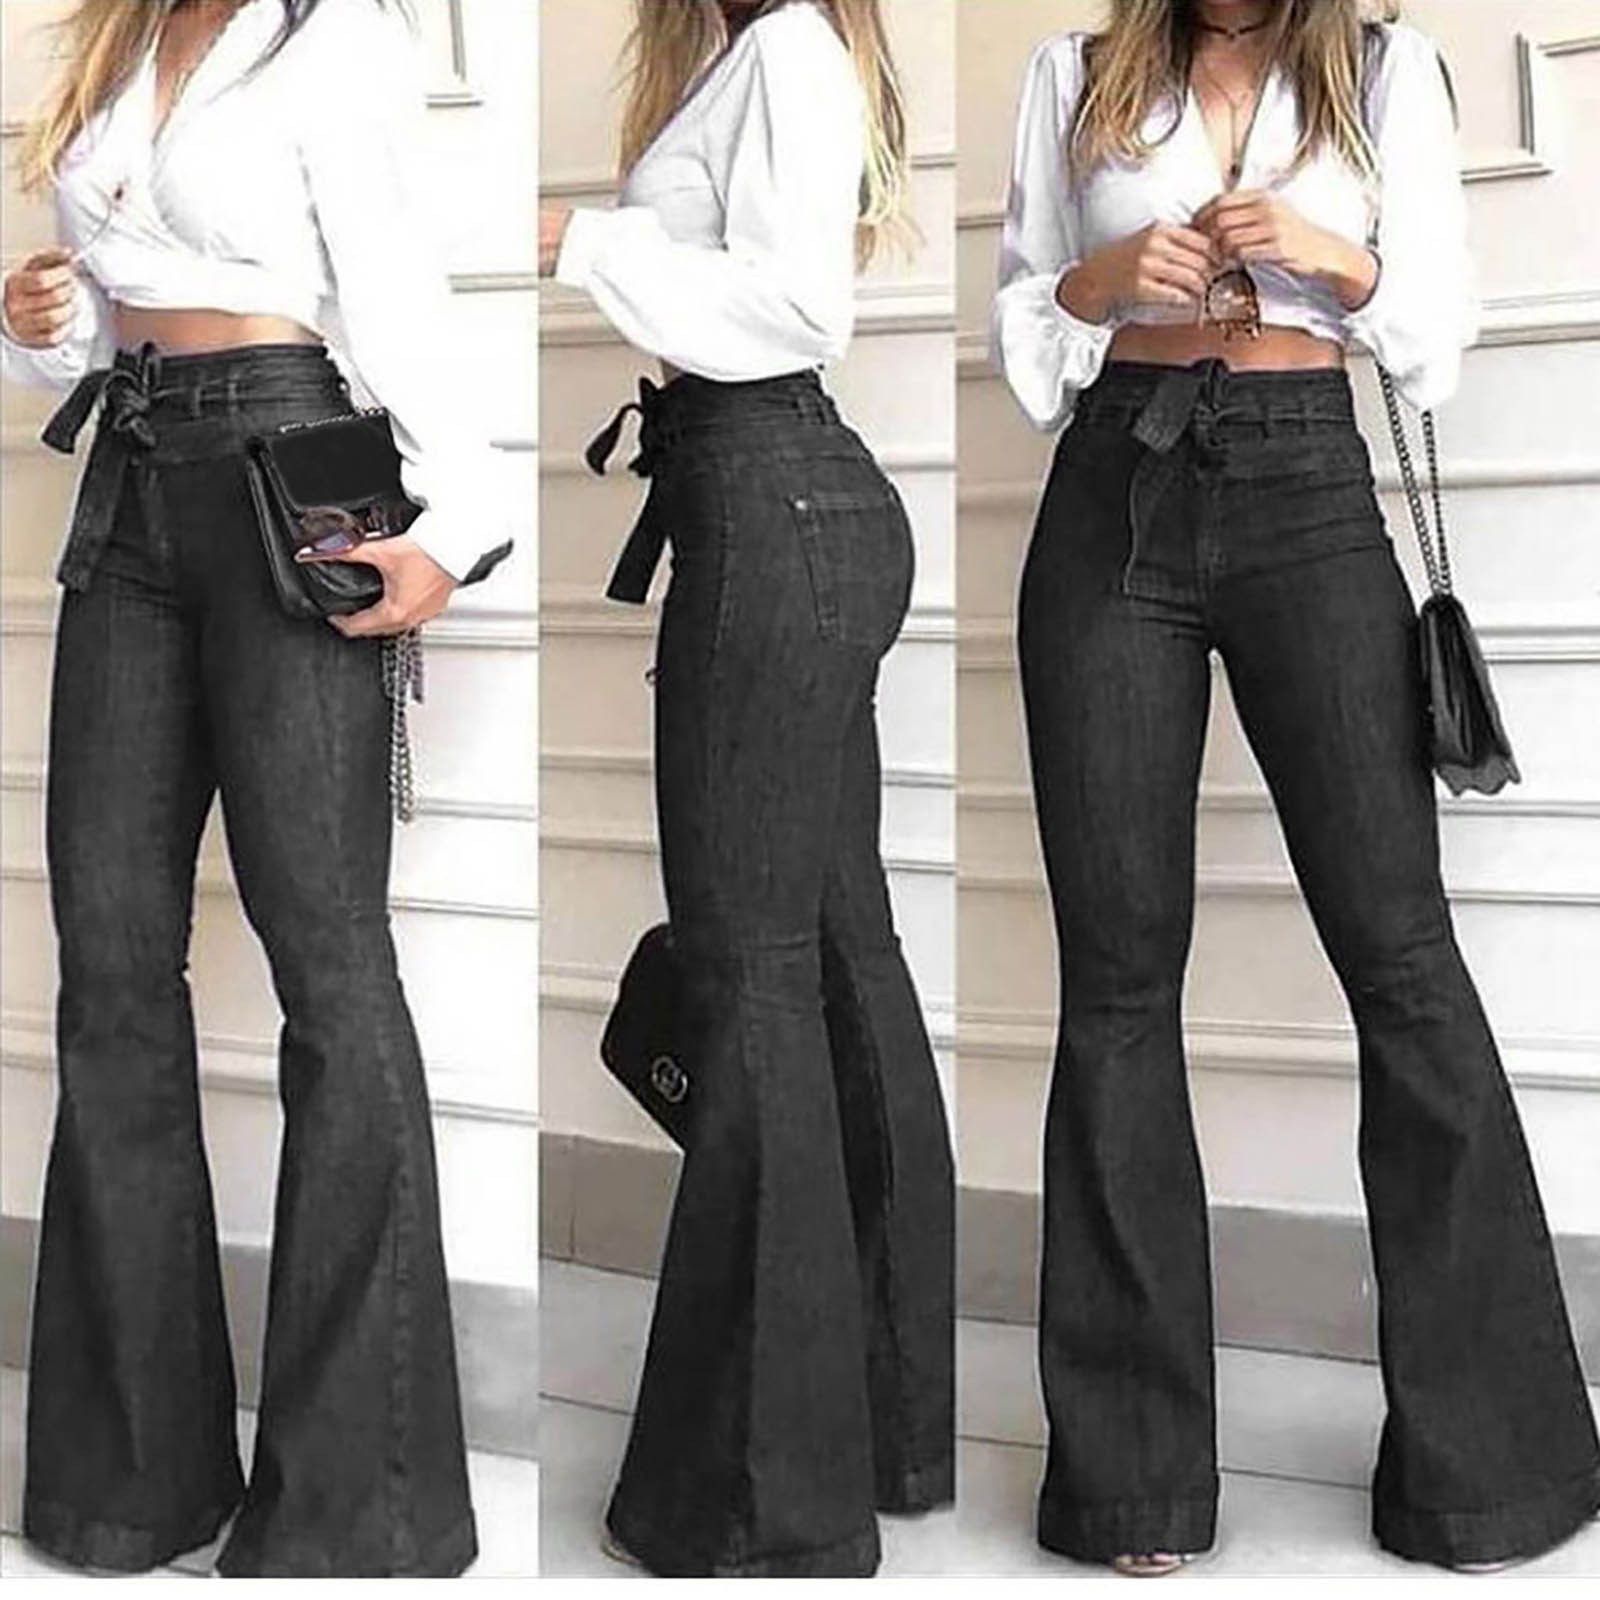 широкие джинсы с каблуками фото